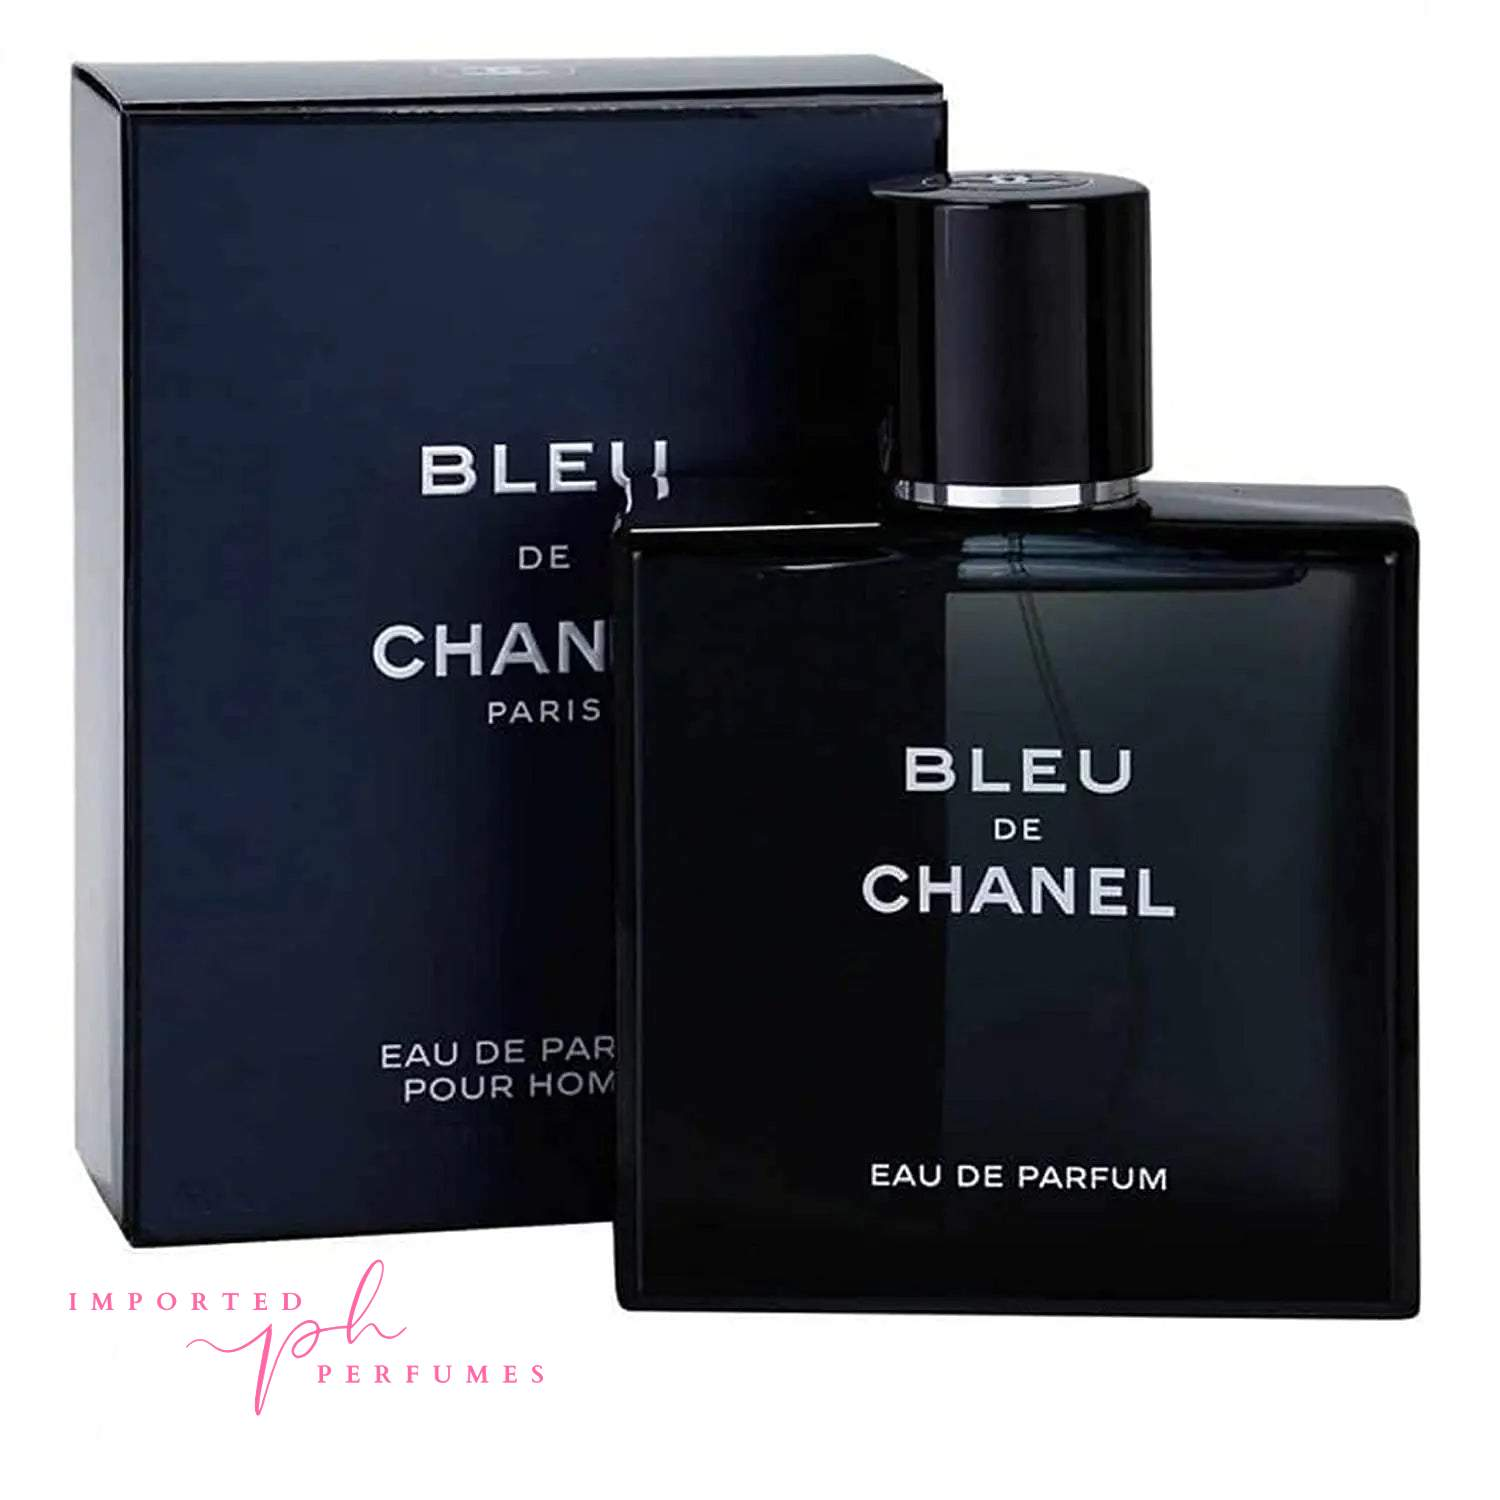 Chanel Bleu De Chanel for Men - eau de Parfum, 100 ml price in UAE